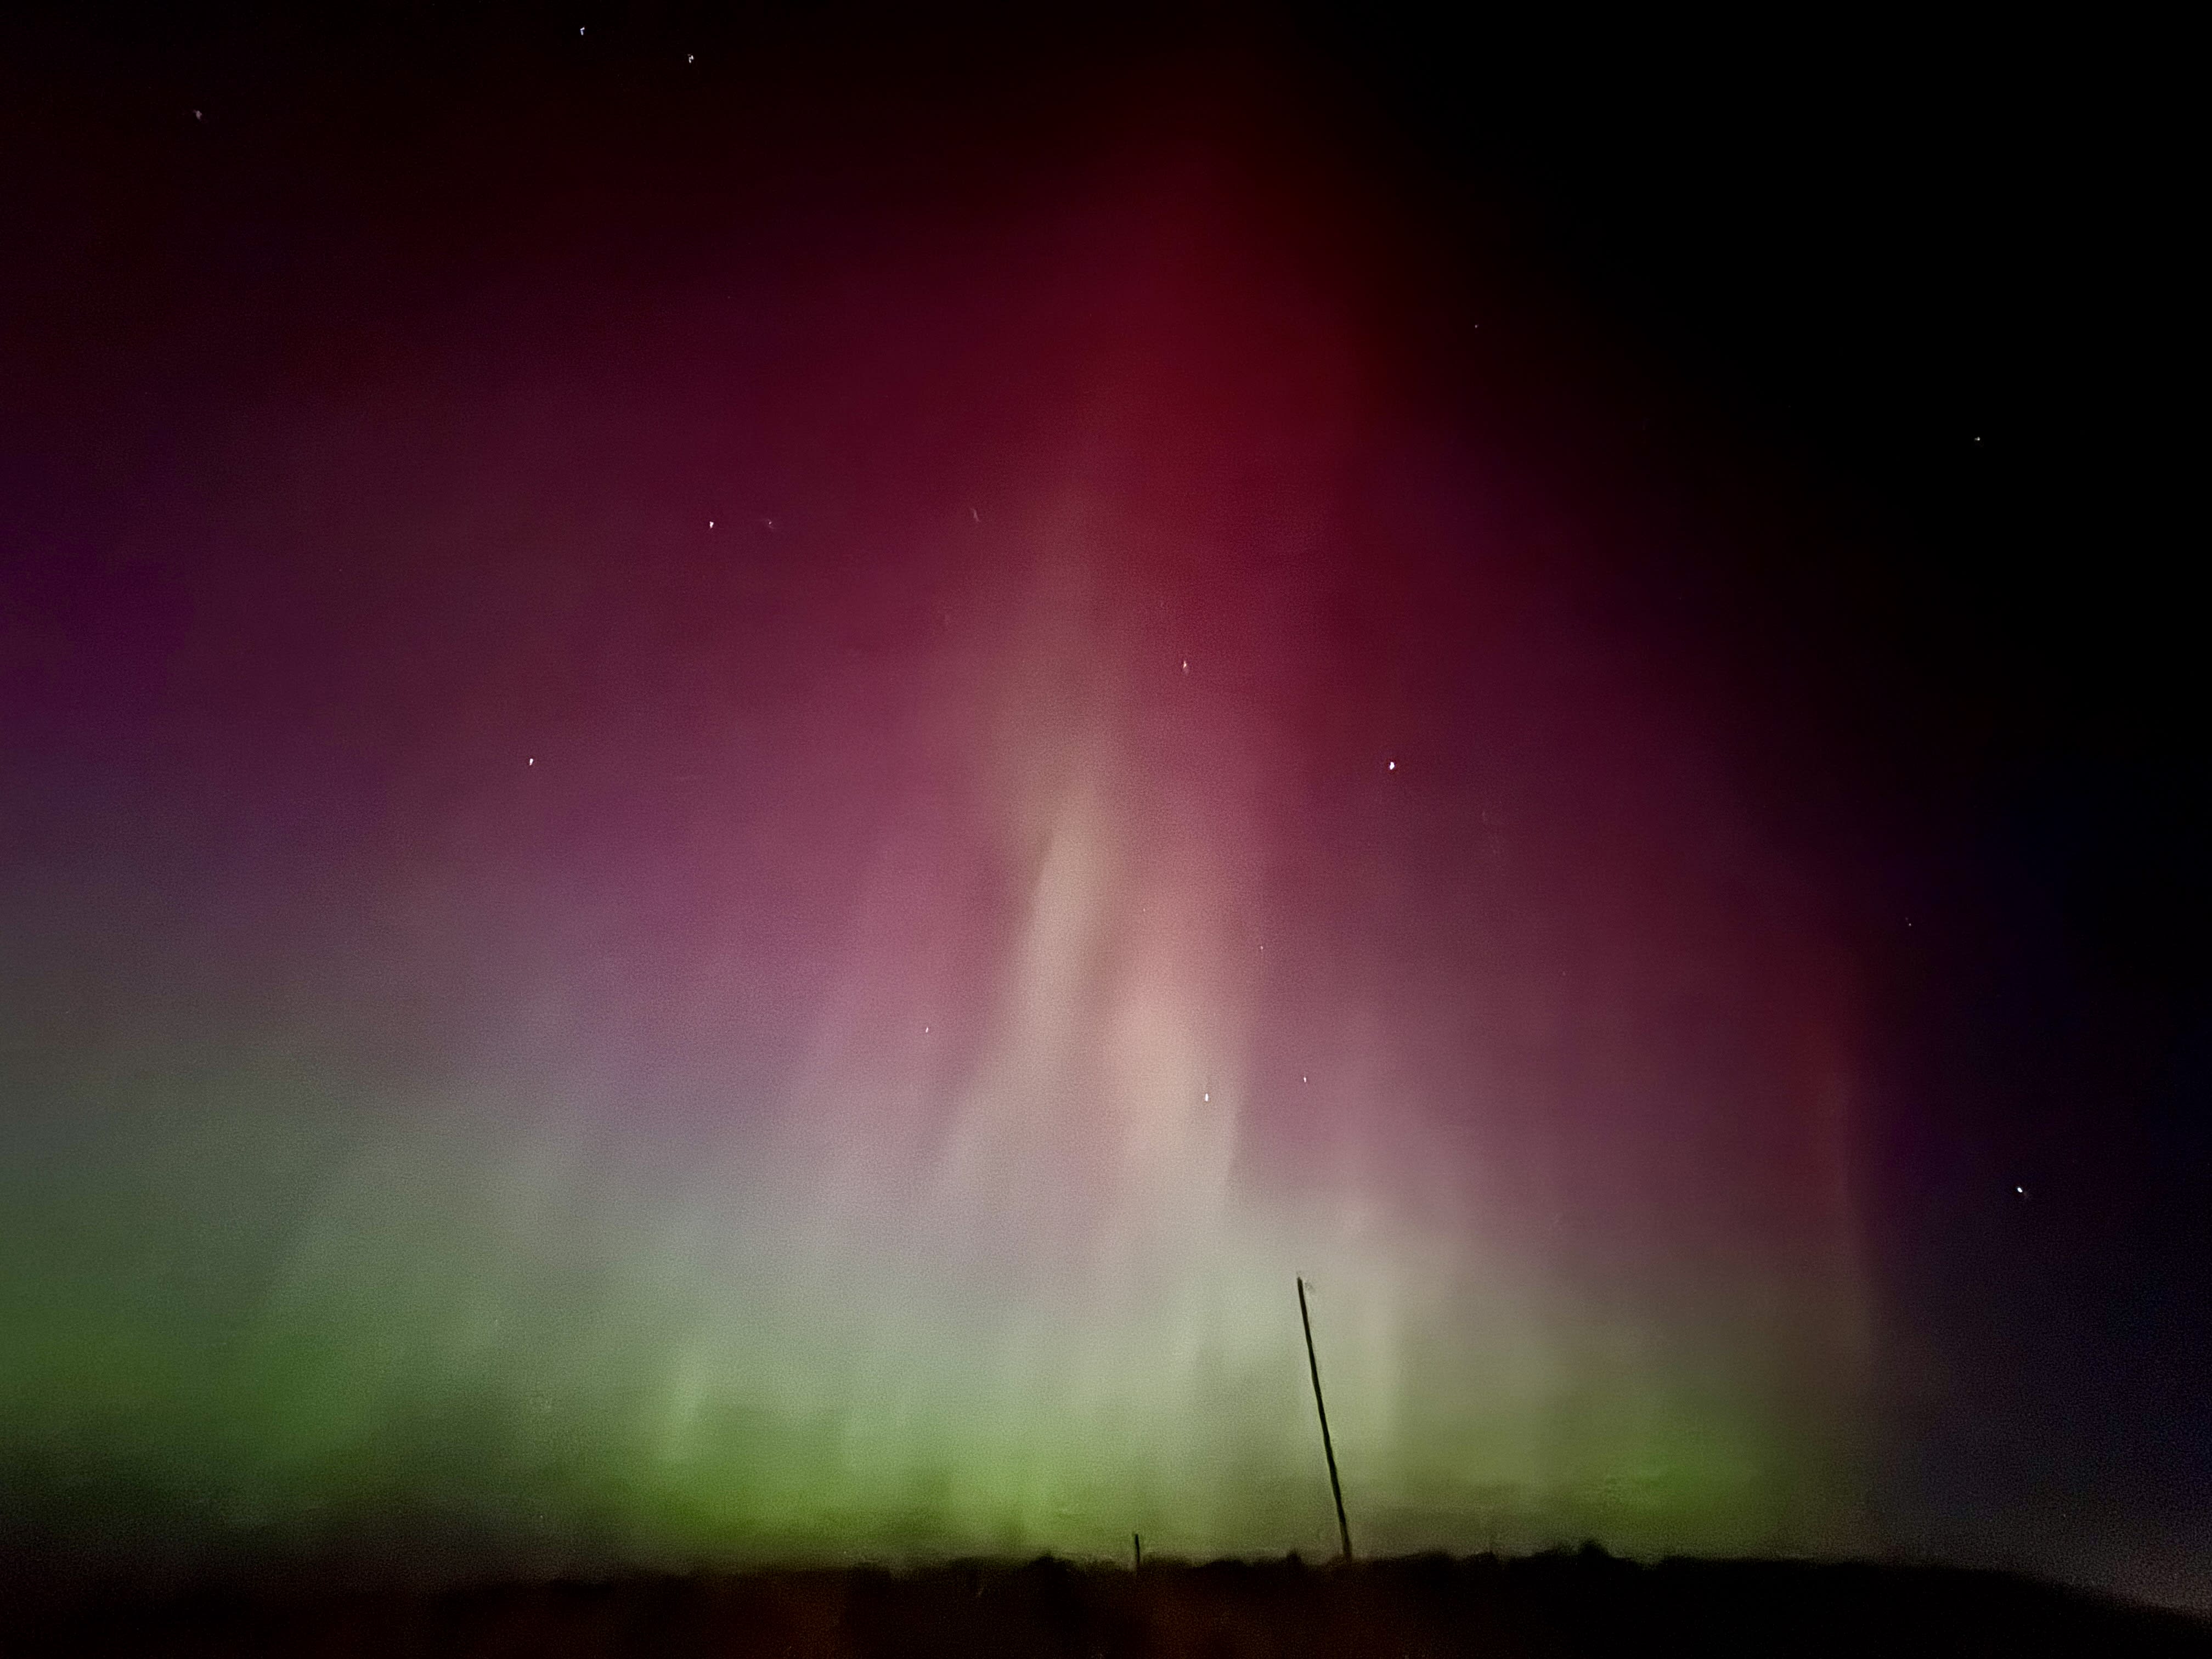 Aurora borealis seen in the northern sky of Colorado